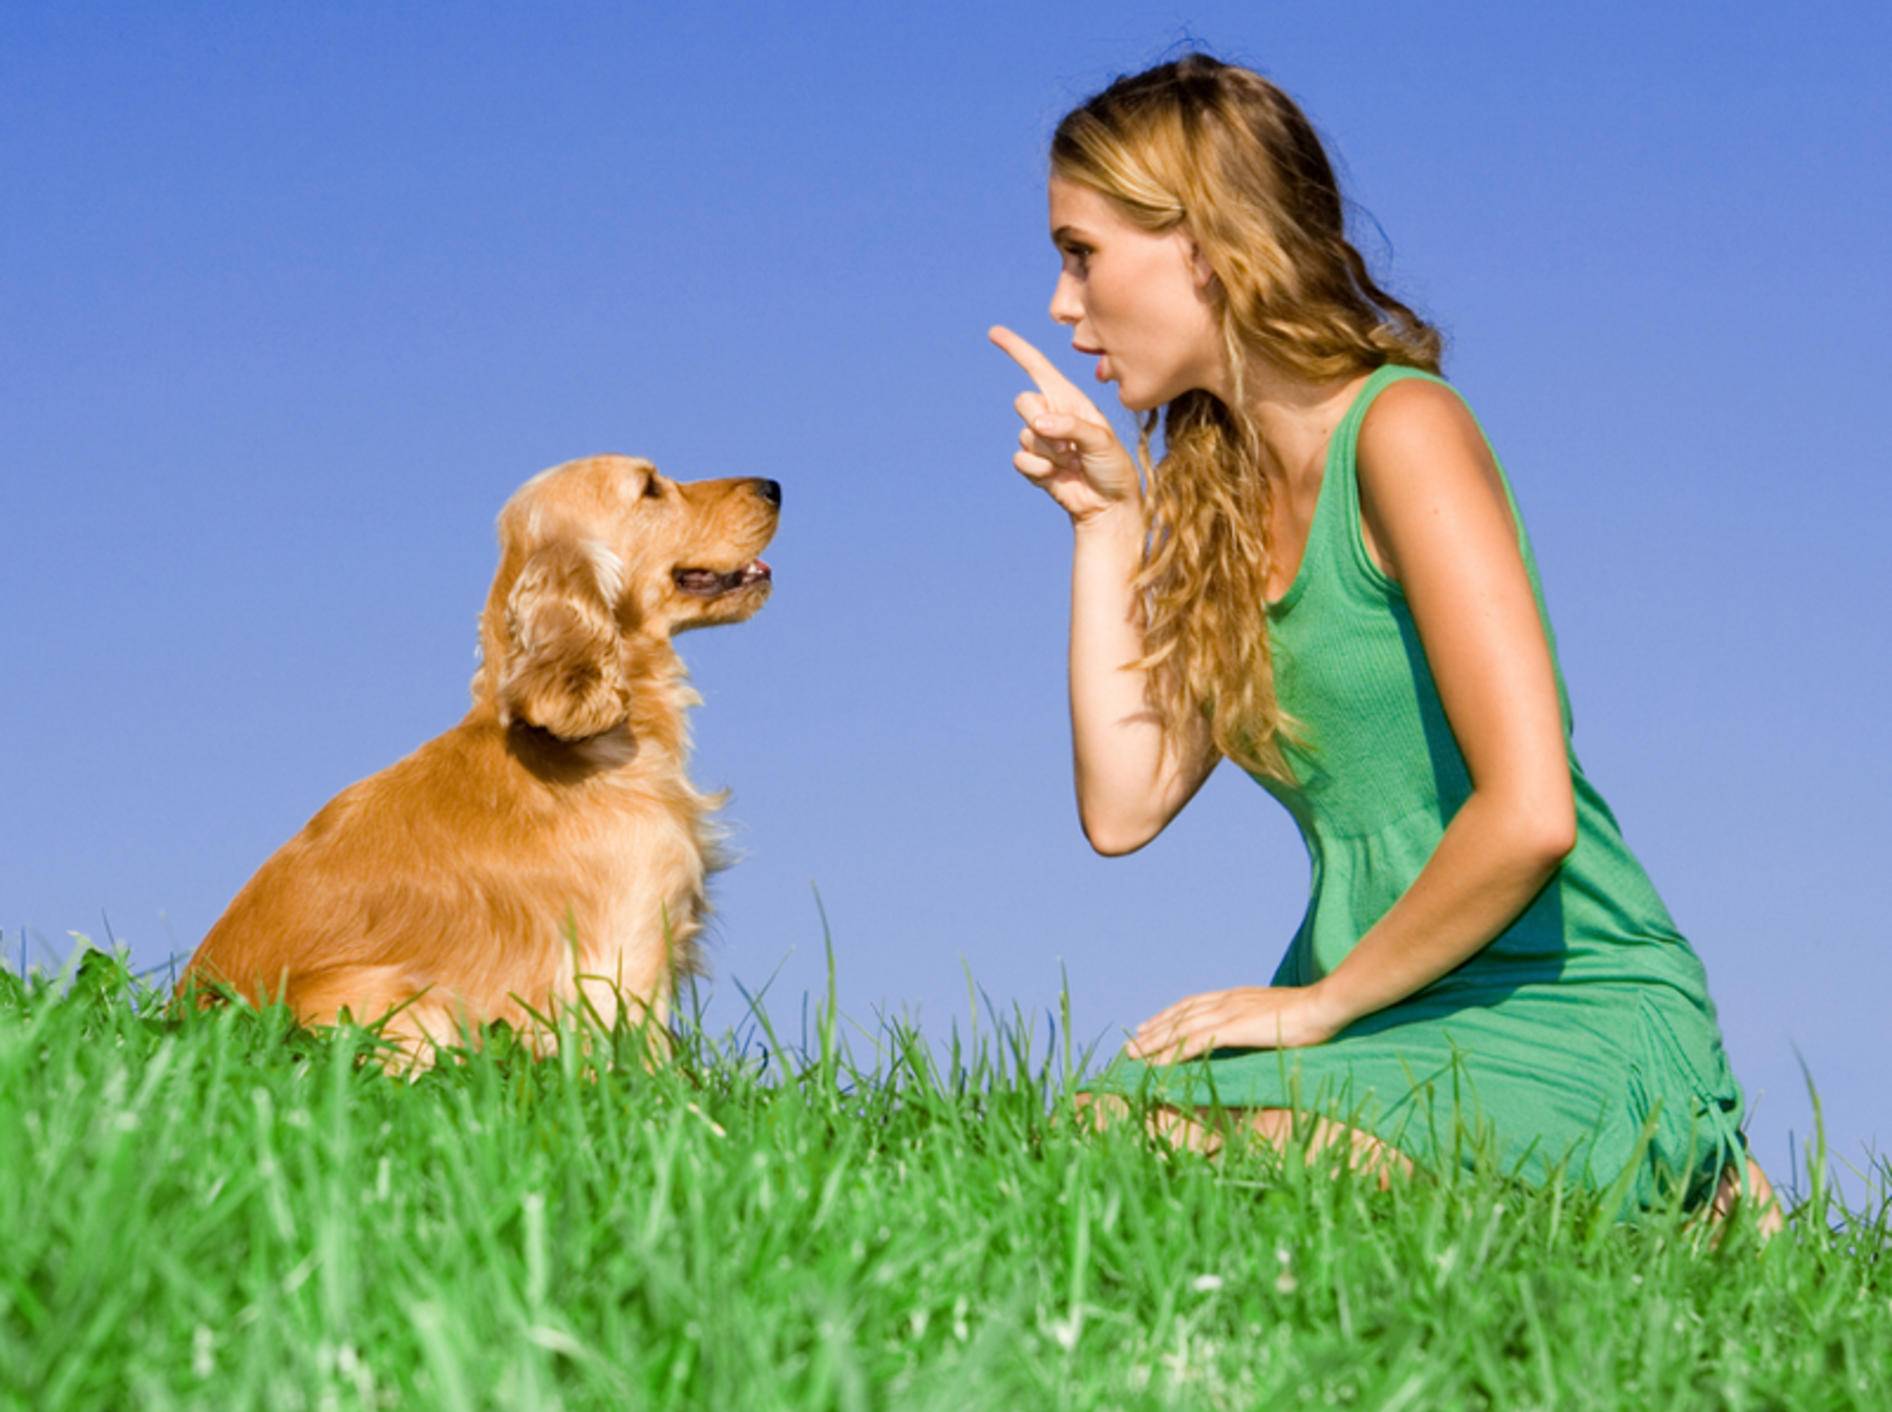 Taube Hunde lassen sich sehr gut mit Zeichensprache erziehen. – Bild: Shutterstock / MANDY GODBEHEAR